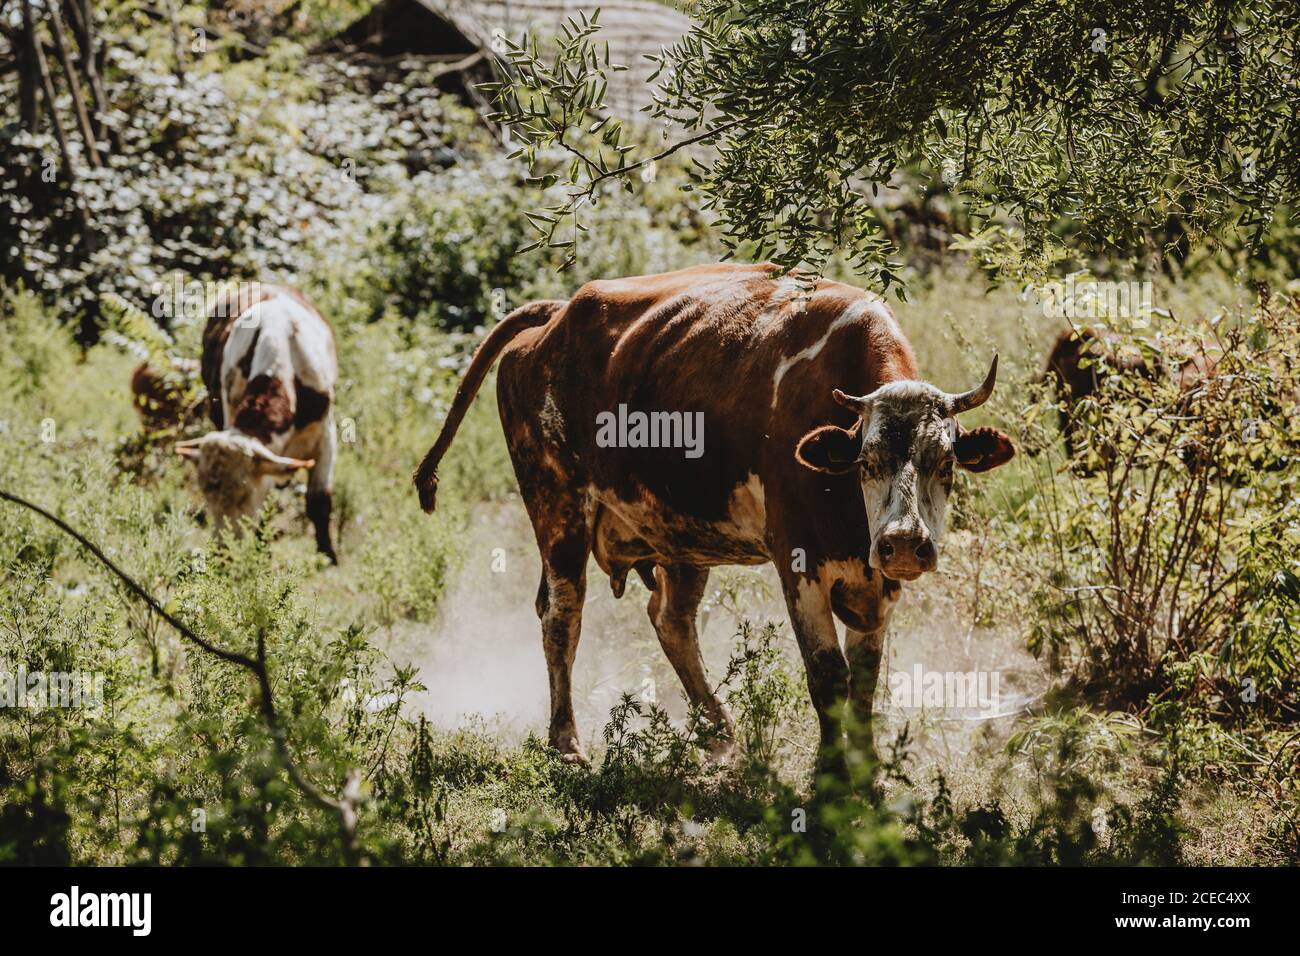 Eine braune, magere gehörnte Kuh mit einem gebrochenen Horn, die im wirbelnden Staub unter den Bäumen steht und während des sonnigen Sommertages auf die Kamera starrt Stockfoto